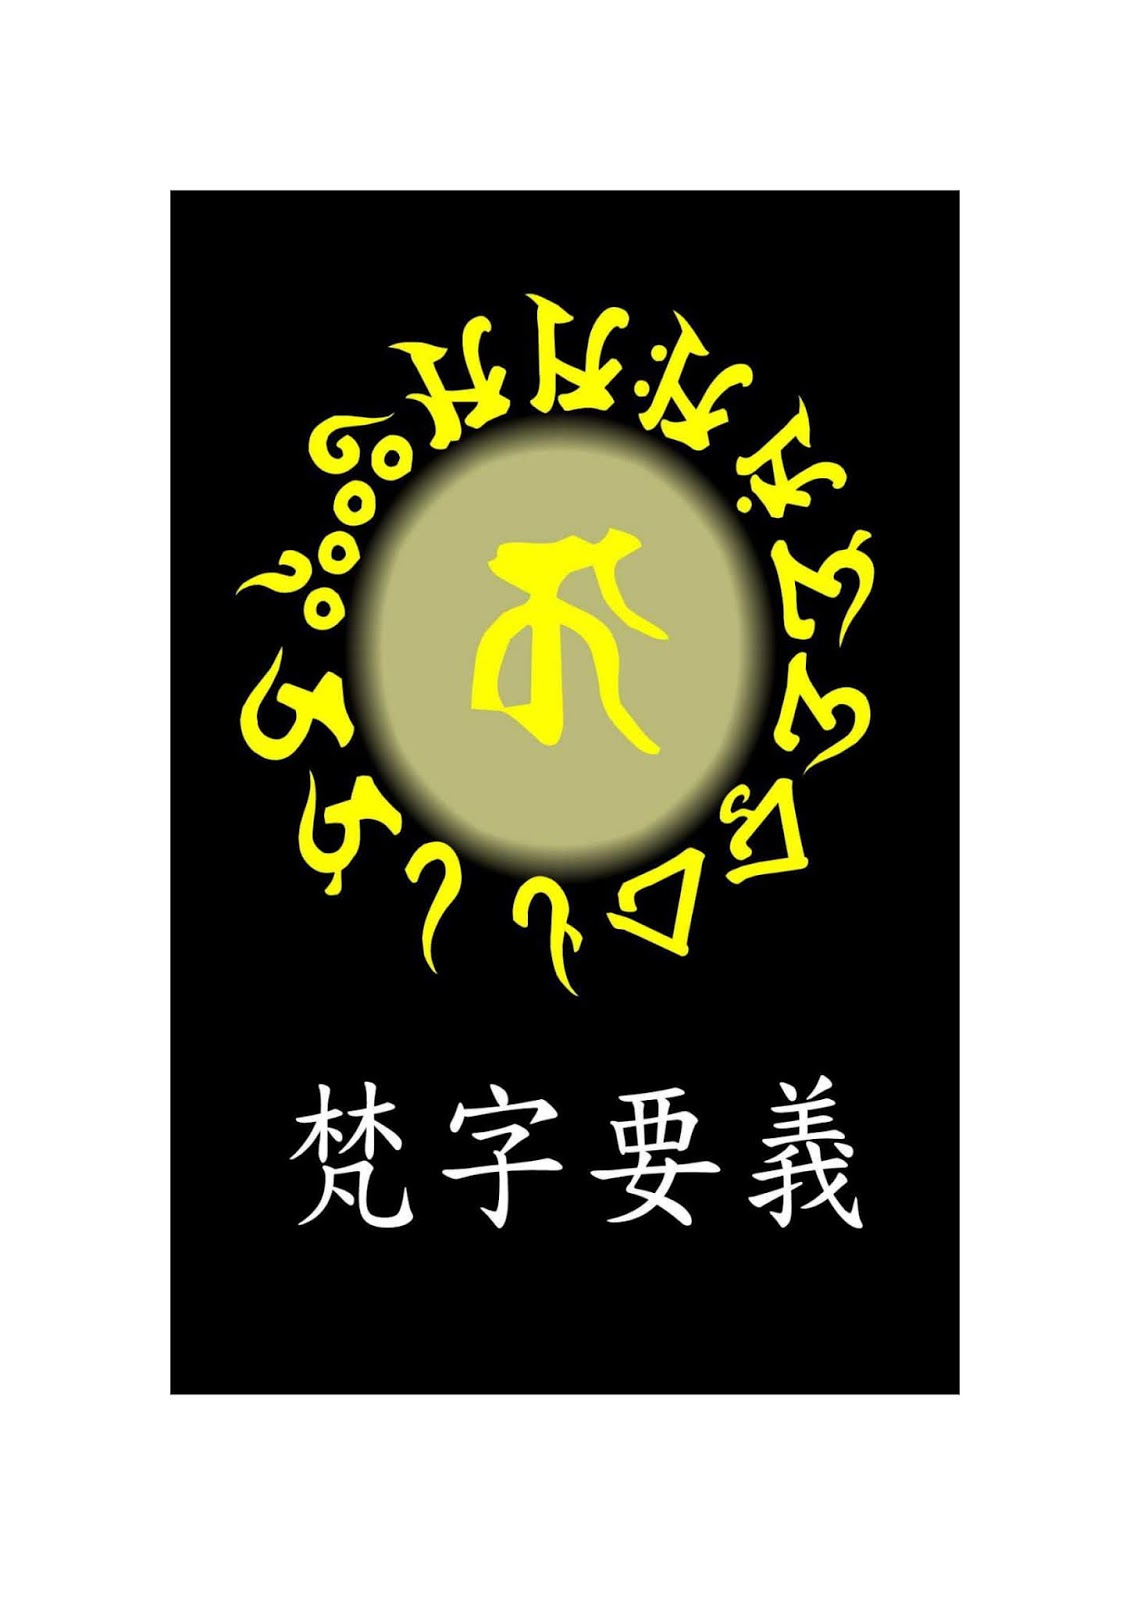 コンプリート 梵字 壁紙 梵字 アン 壁紙